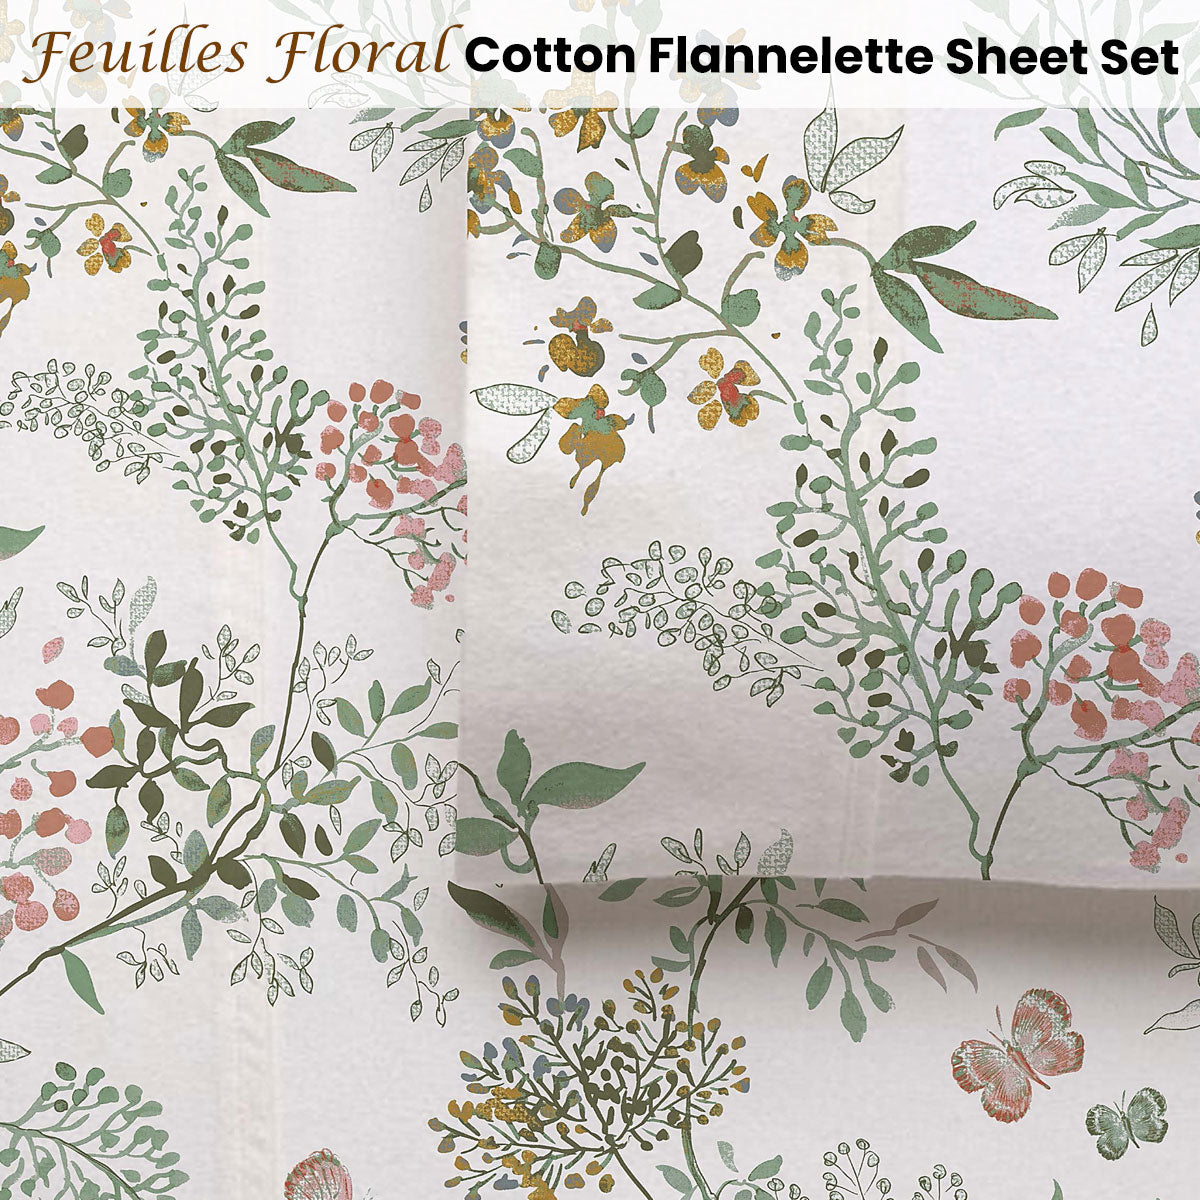 Accessorize Cotton Flannelette Sheet Set 40cm Wall Feuilles Floral Print Queen